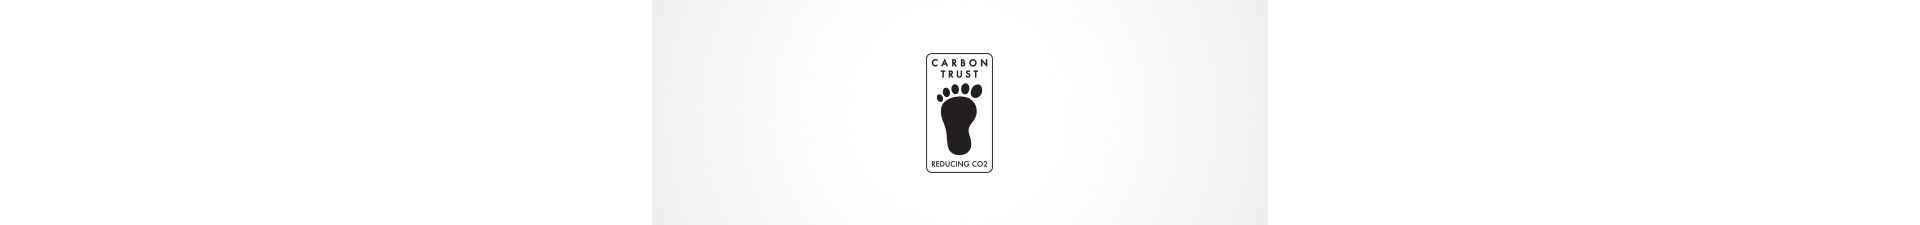 לוגו Carbon Trust